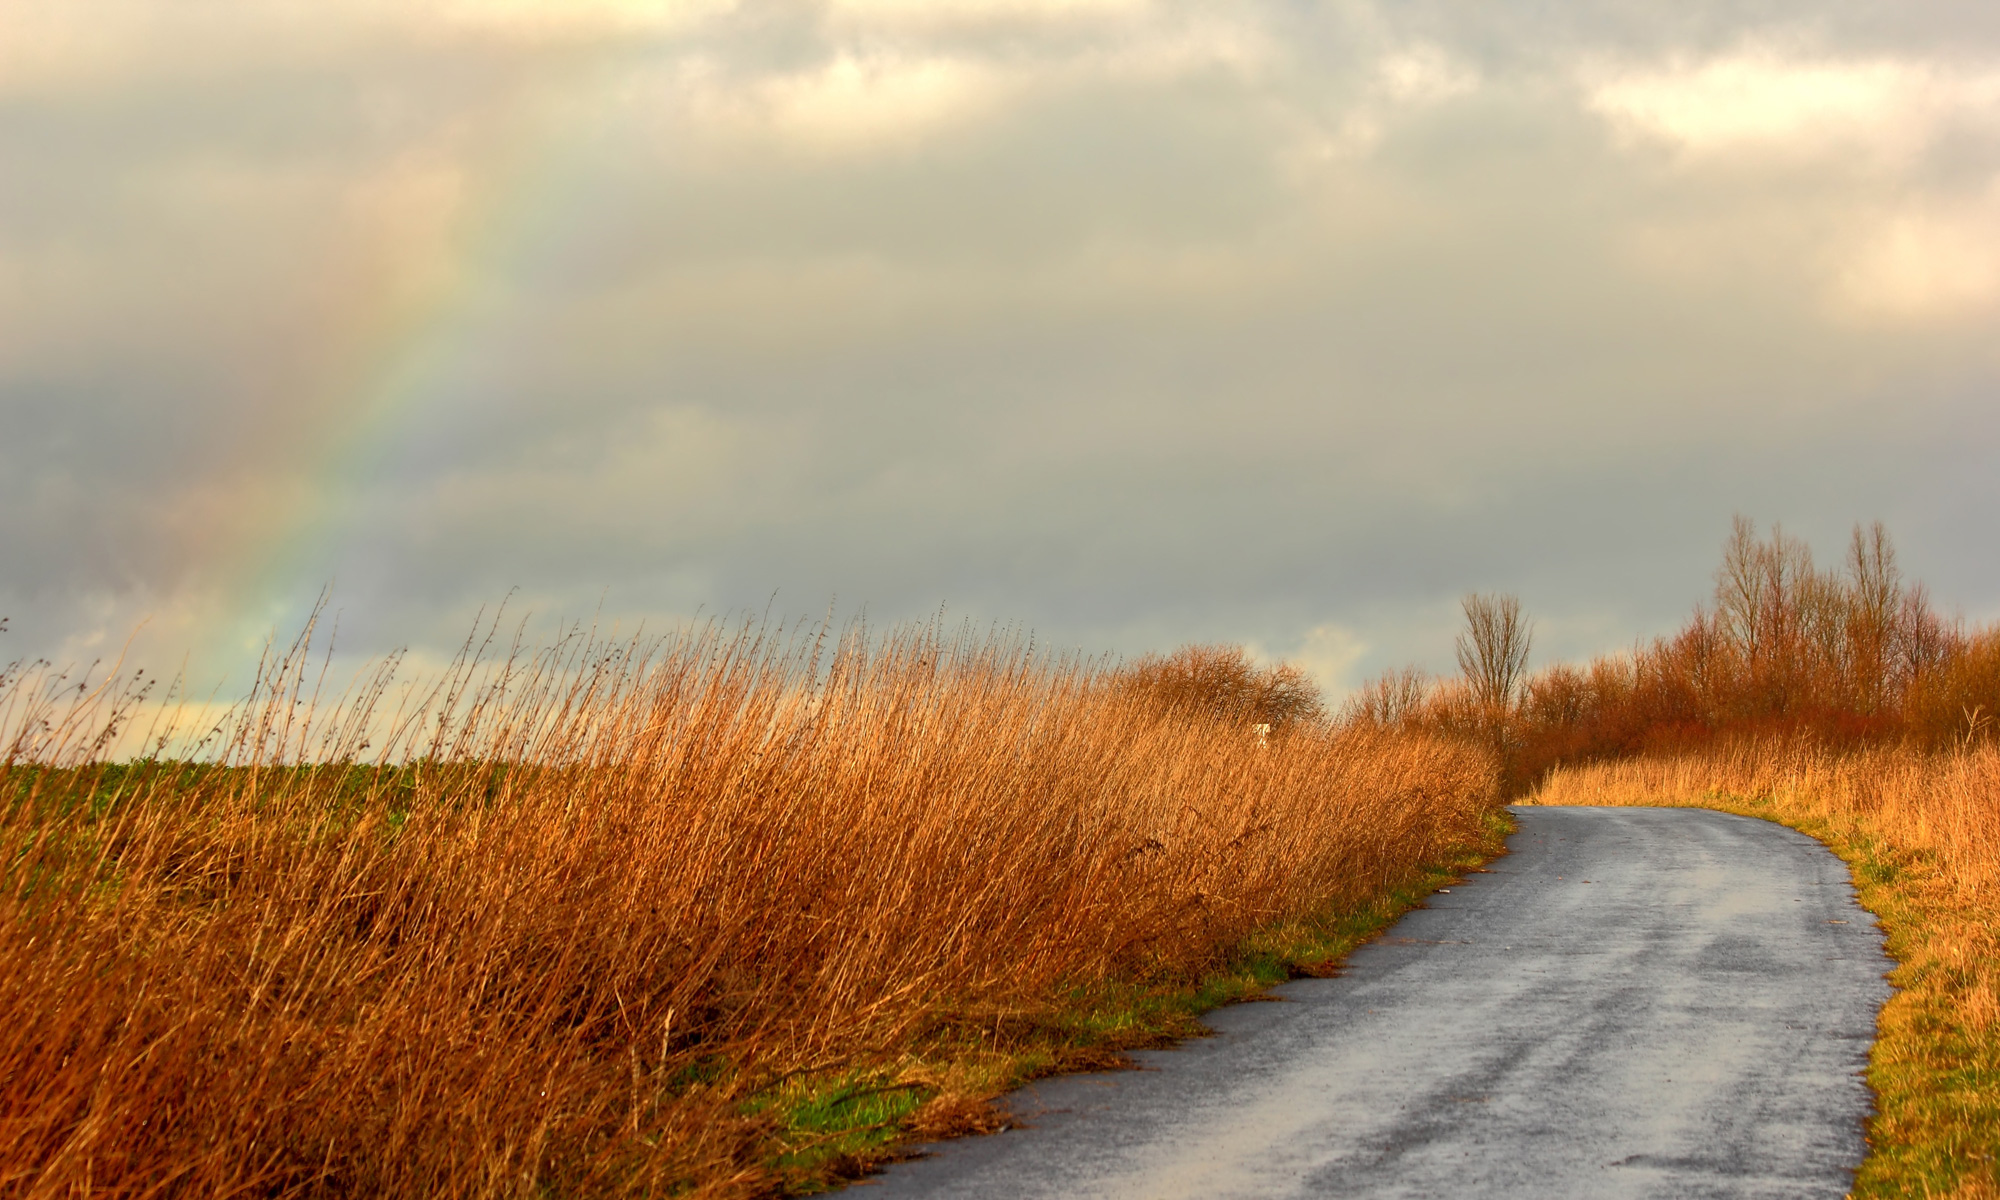 Regenbogen am Straßenrand über einer Wiese, Fotografin: Sunny611, pixabay.com